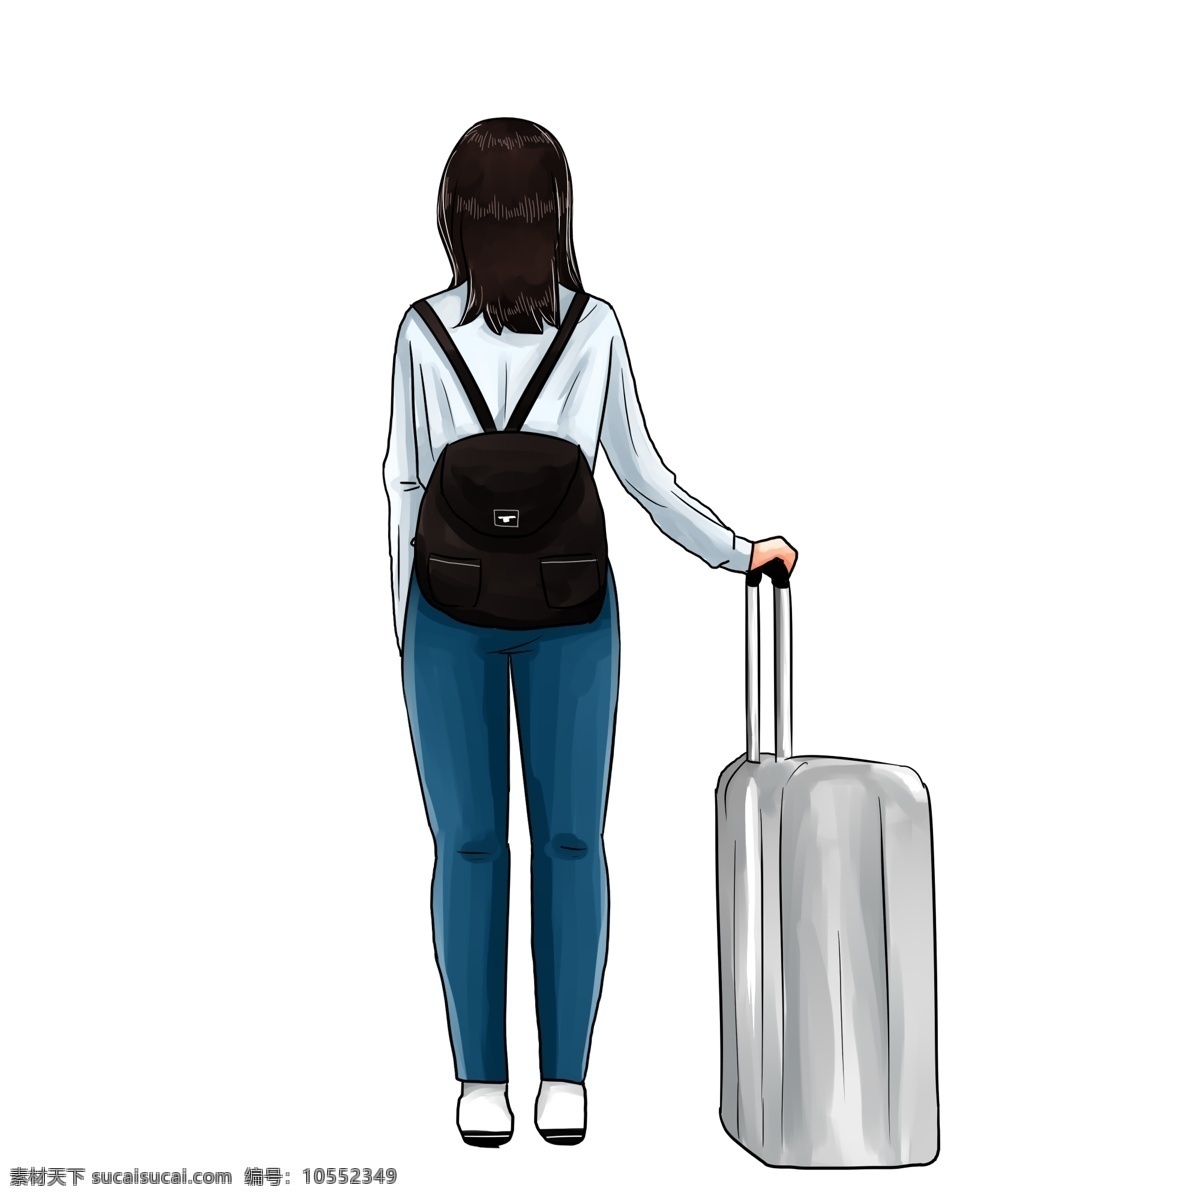 春节 回家 春运 旅行 旅游 手绘 卡通 女孩 背影 行李箱 手绘女孩 卡通人物 独自 一人 背着 包 手